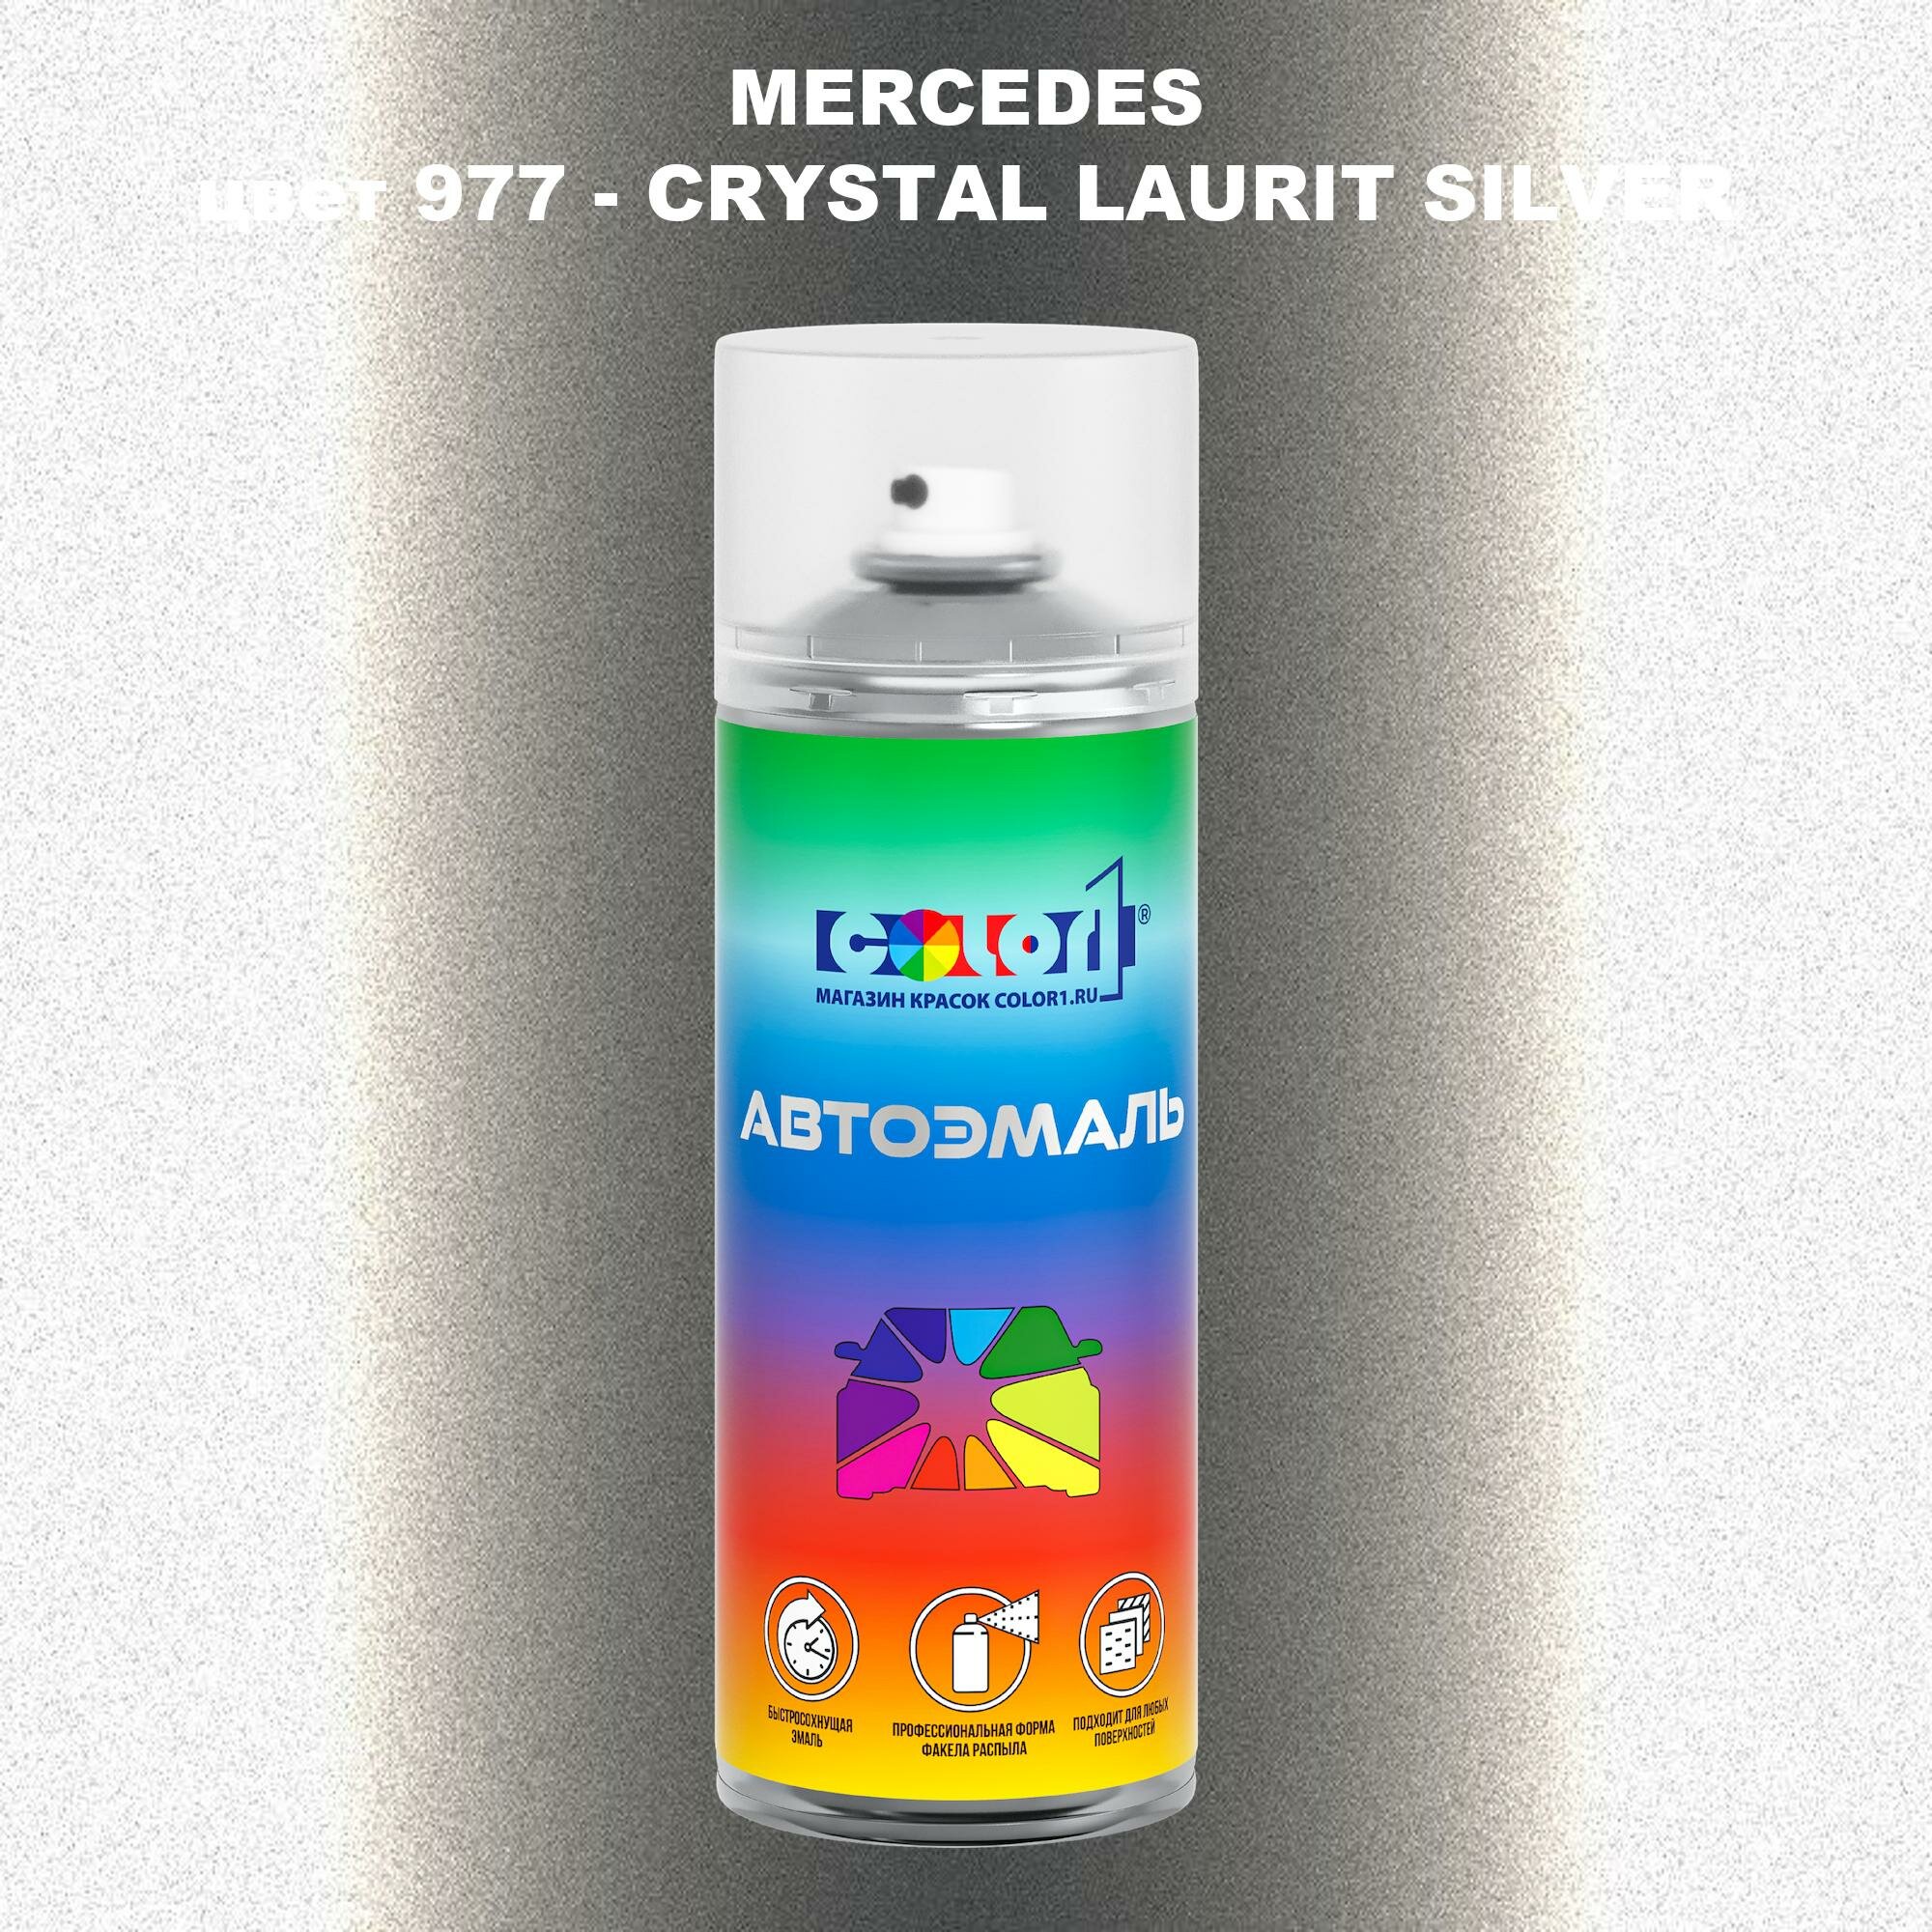 Аэрозольная краска COLOR1 для MERCEDES цвет 977 - CRYSTAL LAURIT SILVER